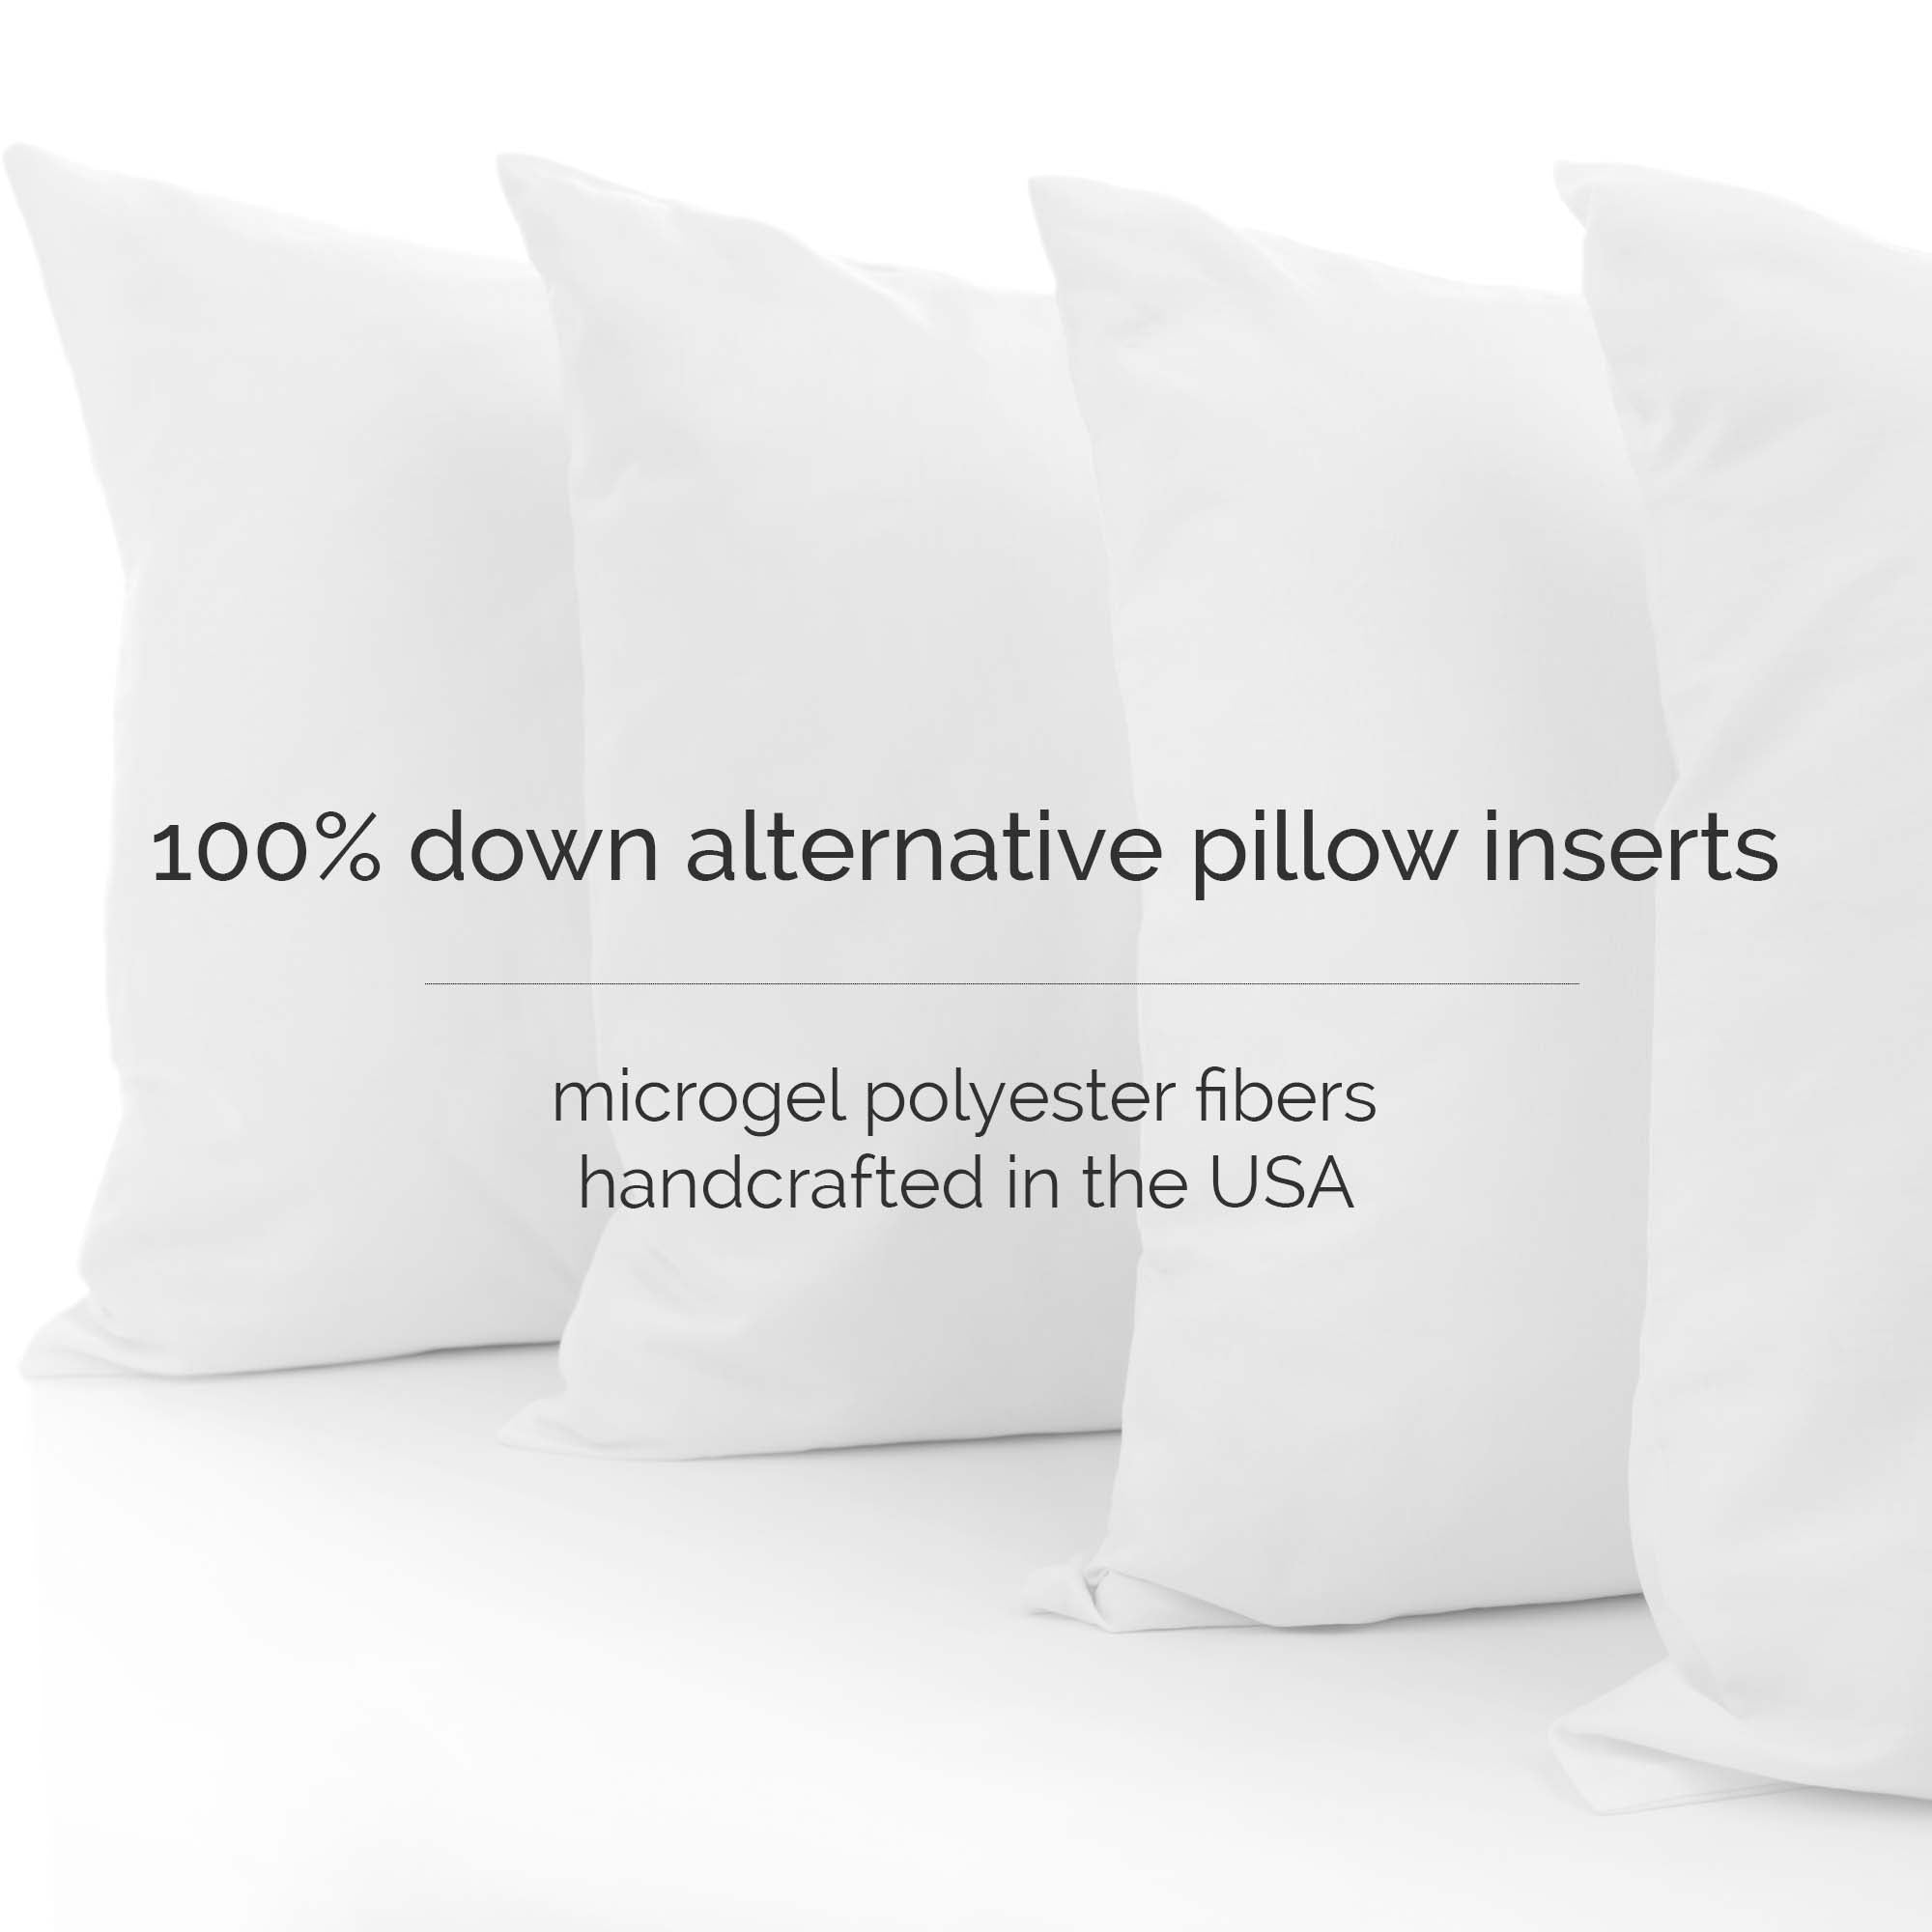 Extra Long Lumbar Pillow Cover, Large Lumbar Pillow Case, Coral